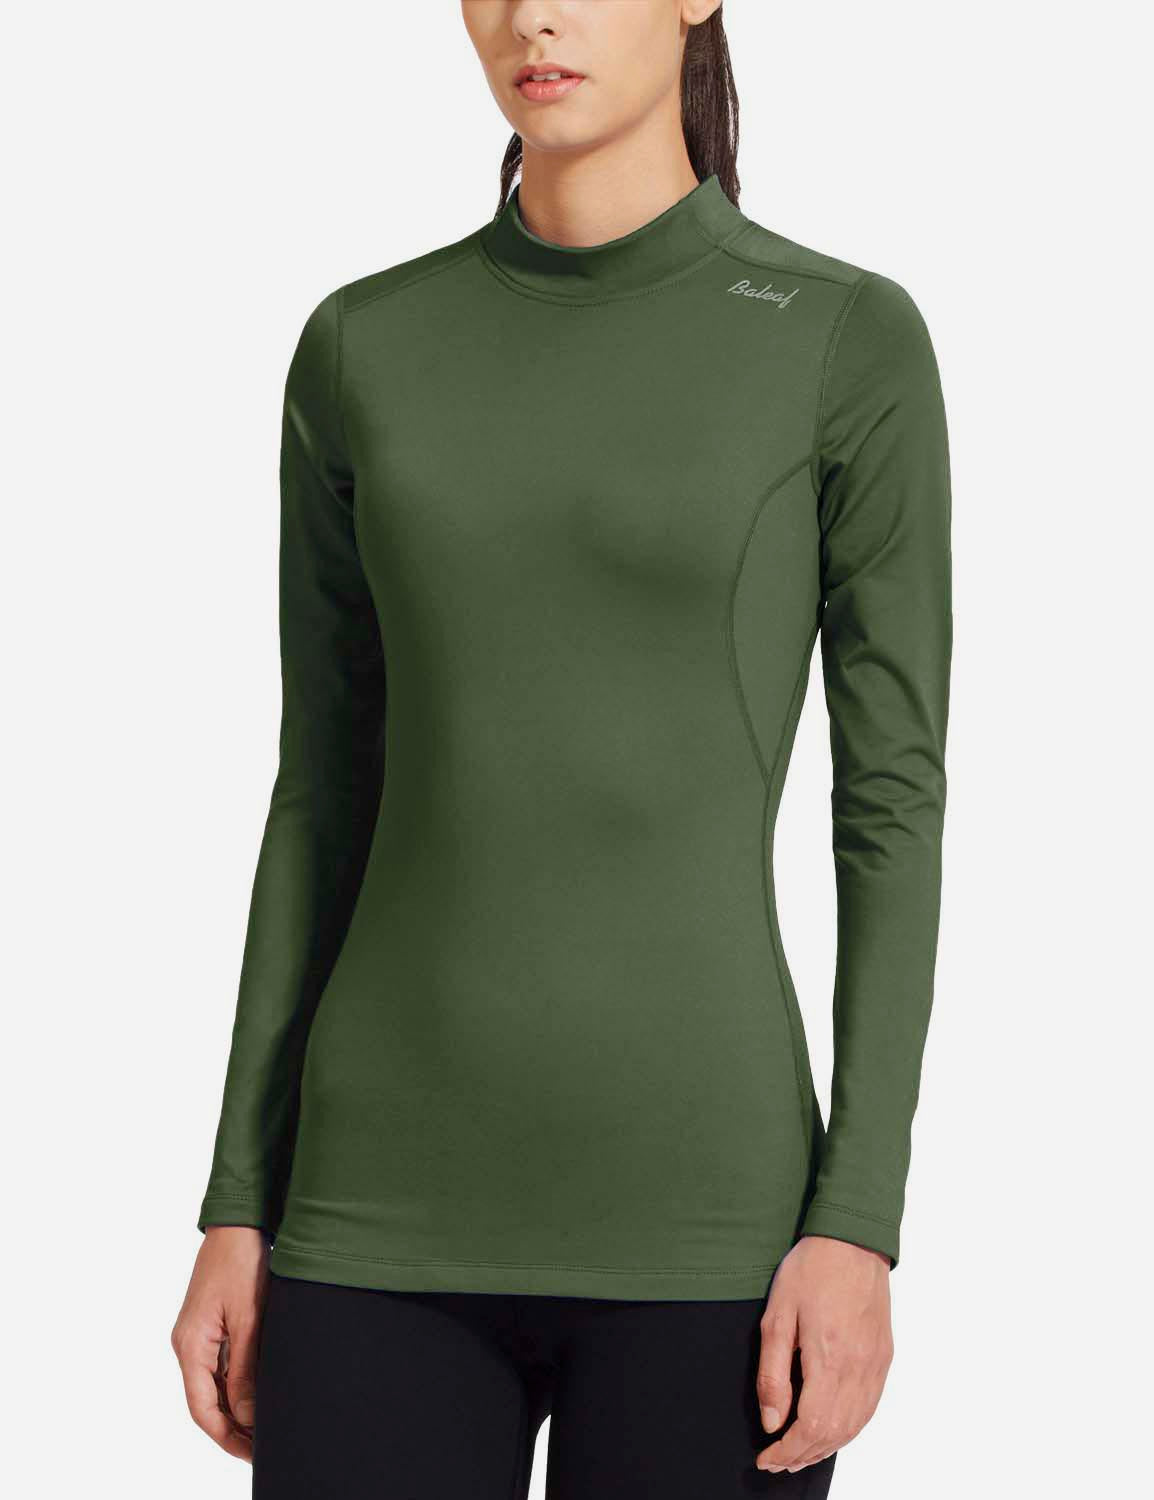 Baleaf Women's Basic Compression Mock-Neck Long Sleeved Shirt abd166 Green Side